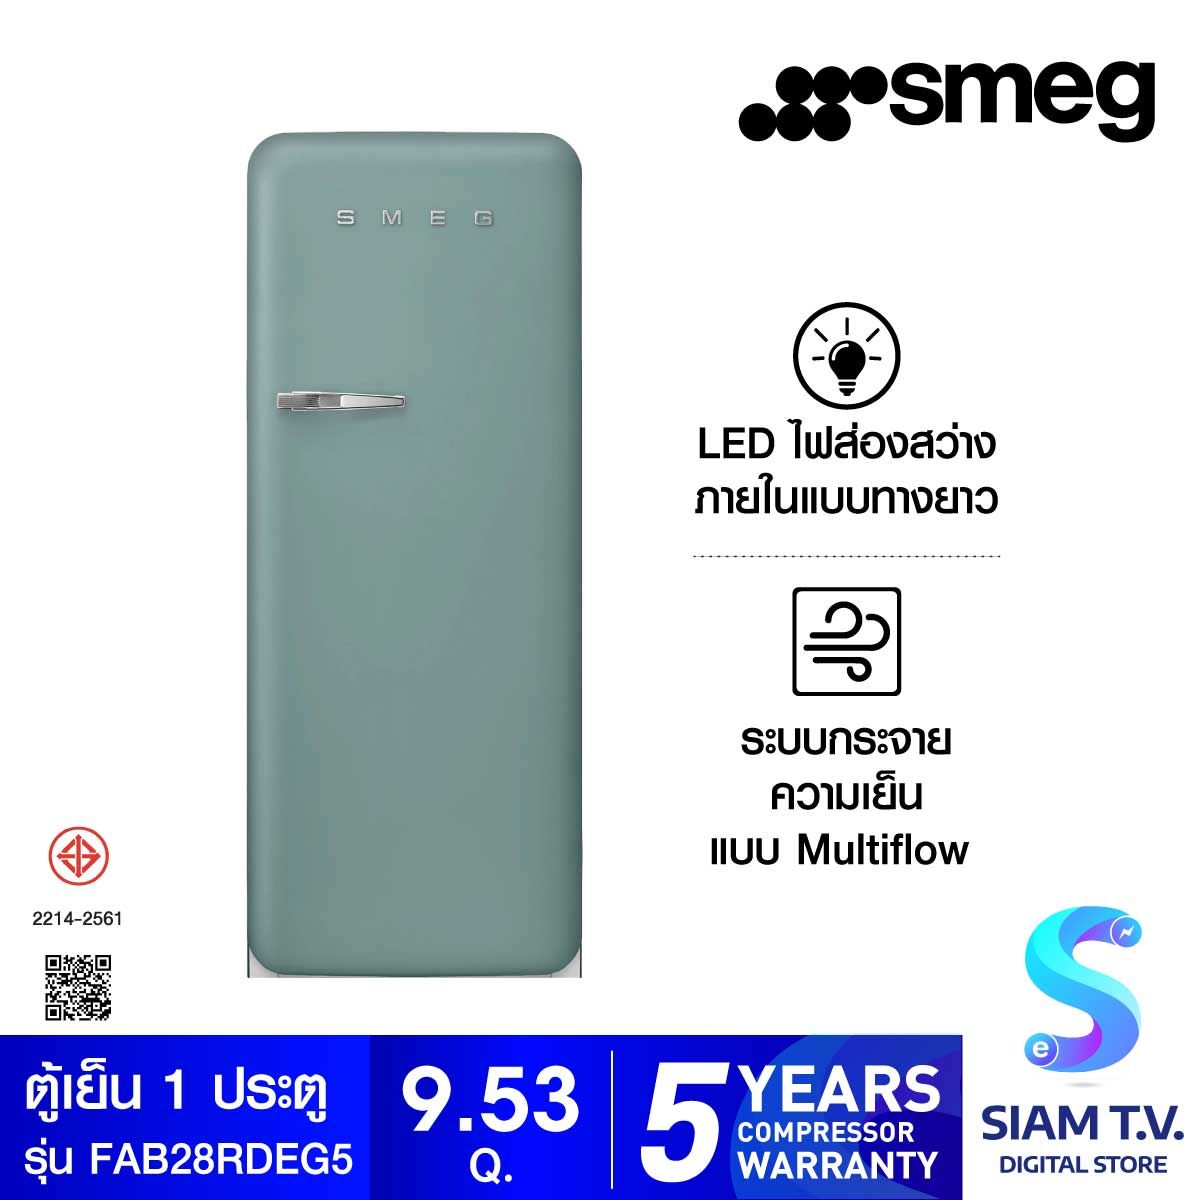 SMEG ตู้เย็น 1 ประตู 9.53 Q.สไตล์ 50 Retro Aesthetic รุ่น FAB28RDEG5 เขียวเอมเมอรัล